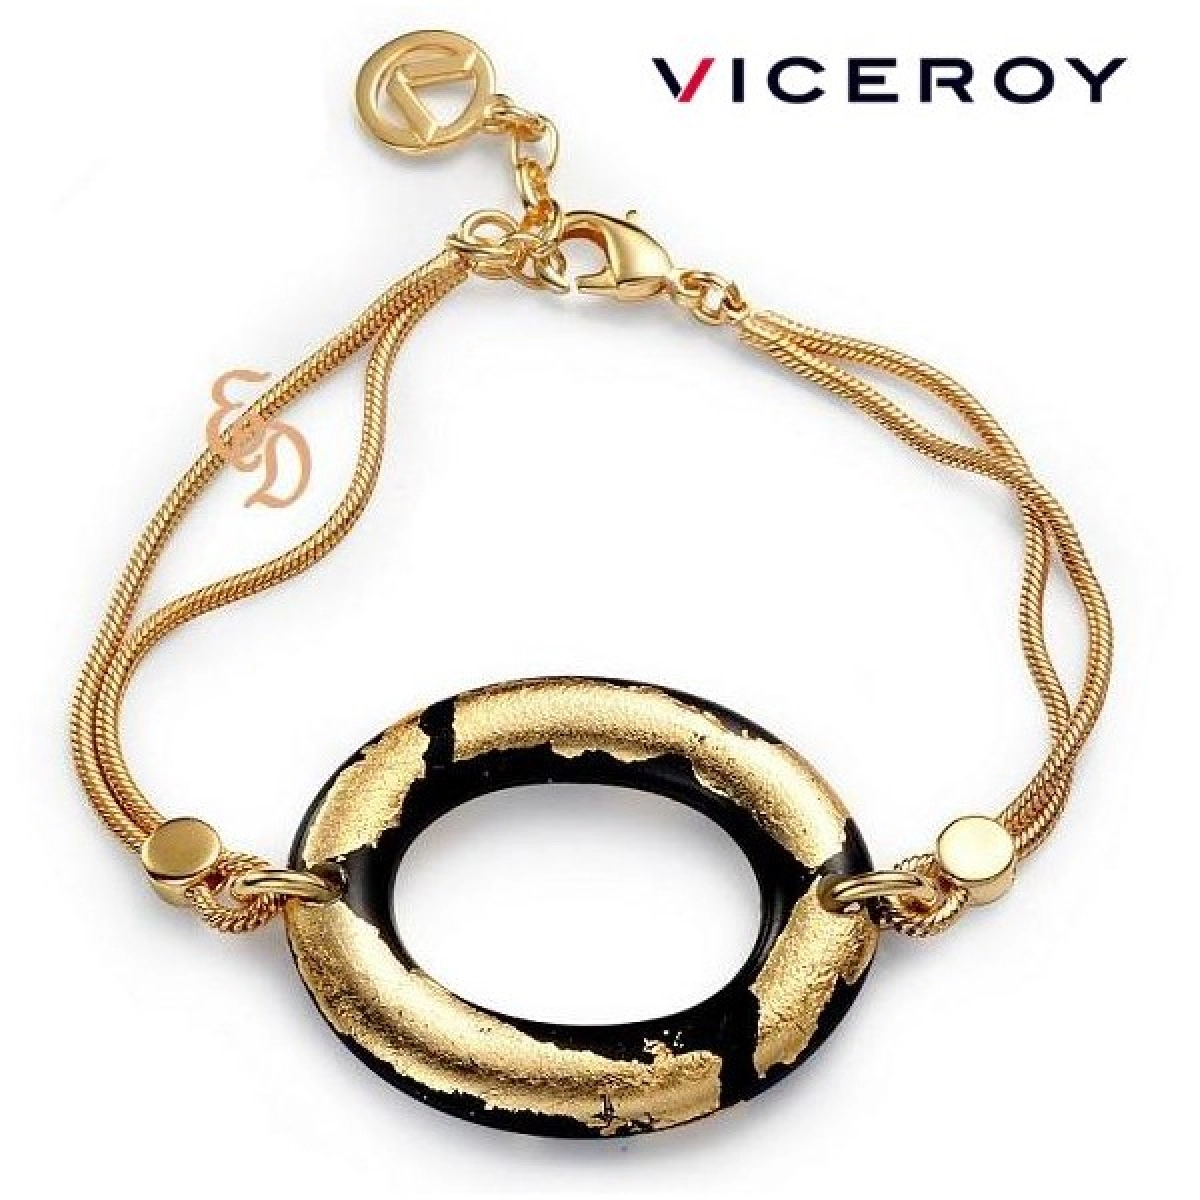 Viceroy gold plated bracelet B1058P000-99